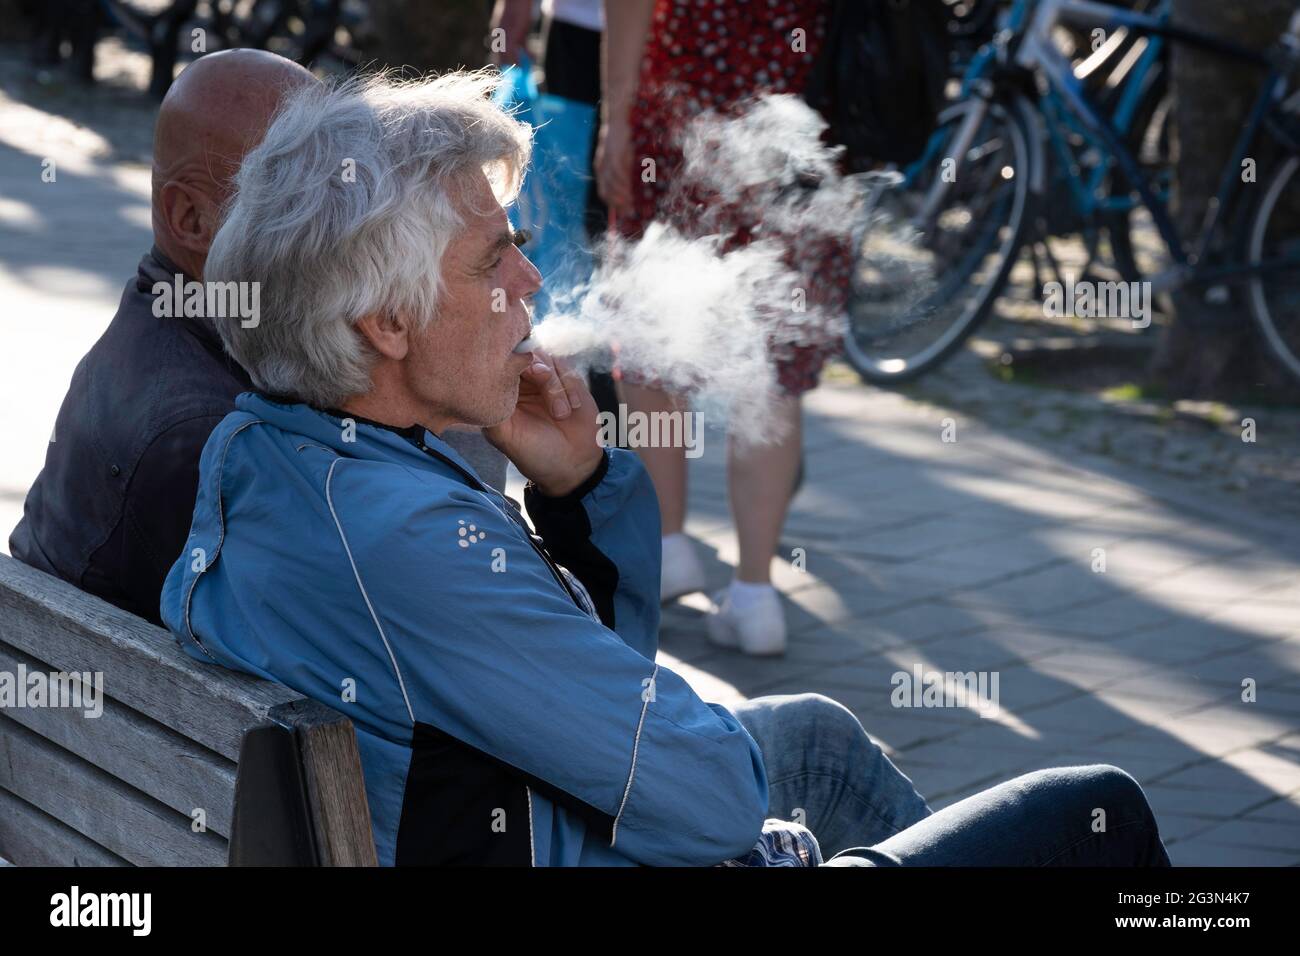 L'homme s'assoit sur un banc en bois, fume un cigare et souffle la fumée hors de sa bouche. Vue latérale avec la fumée comme un nuage blanc dans le rétroéclairage Banque D'Images